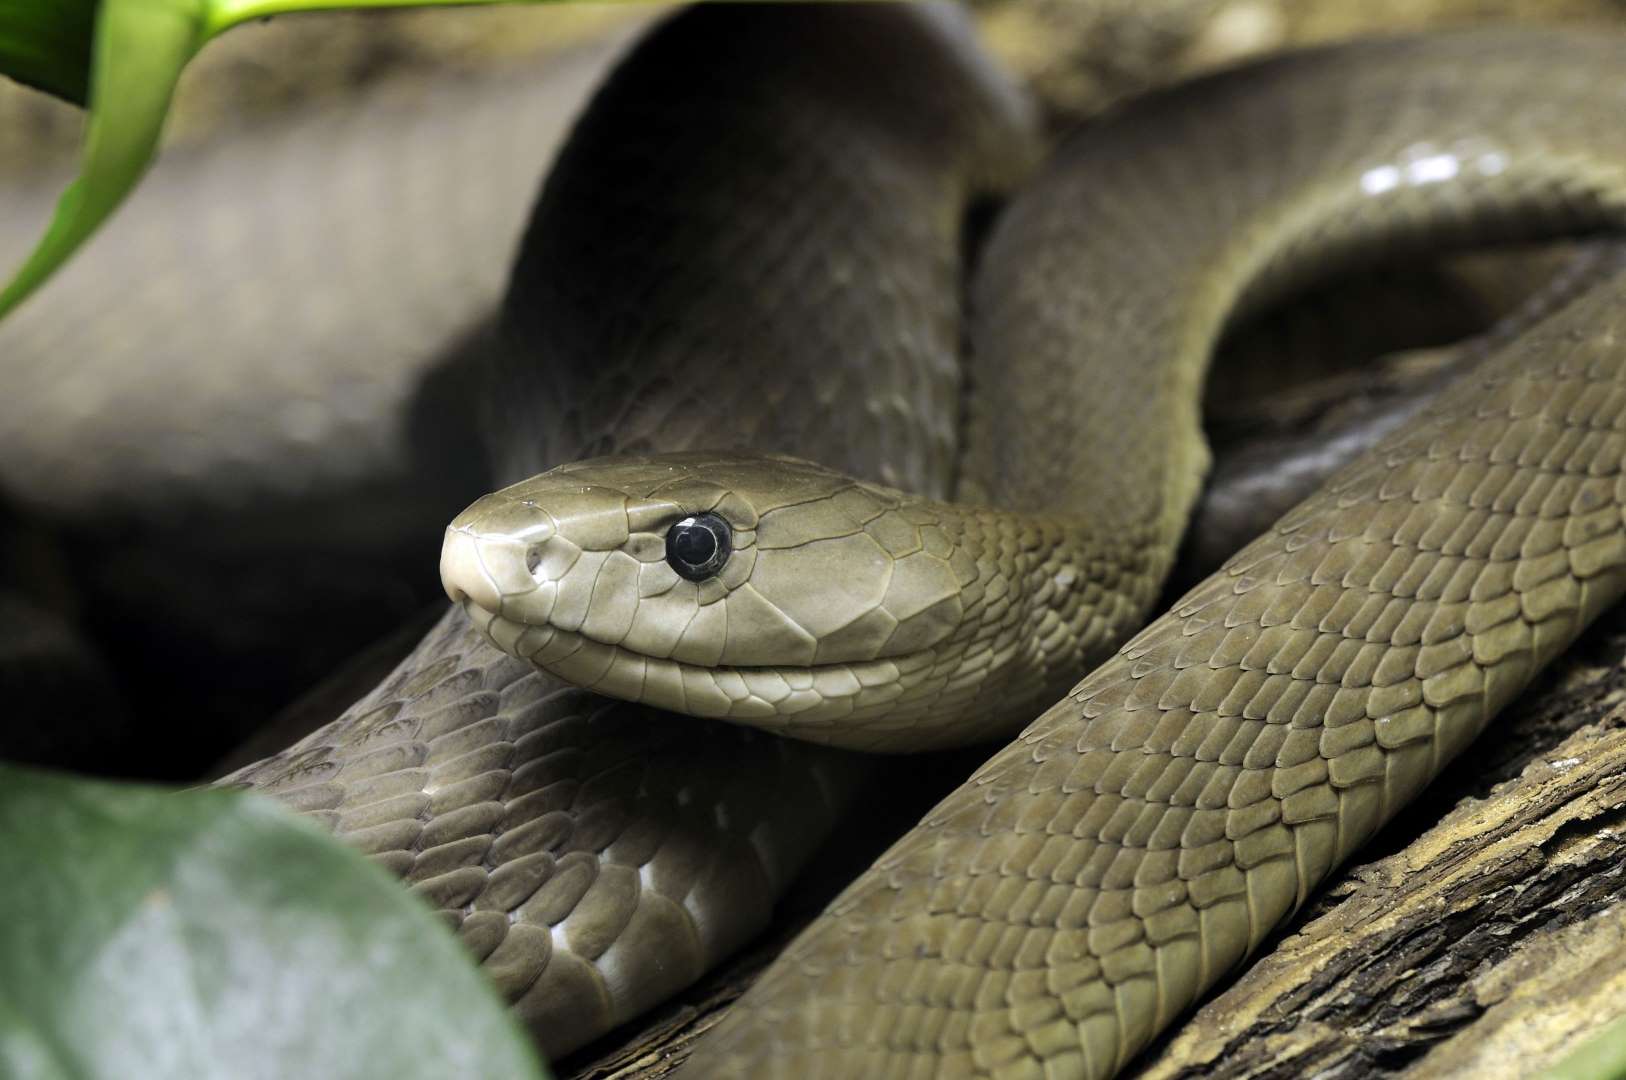 Προσοχή! – Αυτά είναι τα δηλητηριώδη φίδια της χώρας μας – Οι πρώτες βοήθειες αν σας δαγκώσουν